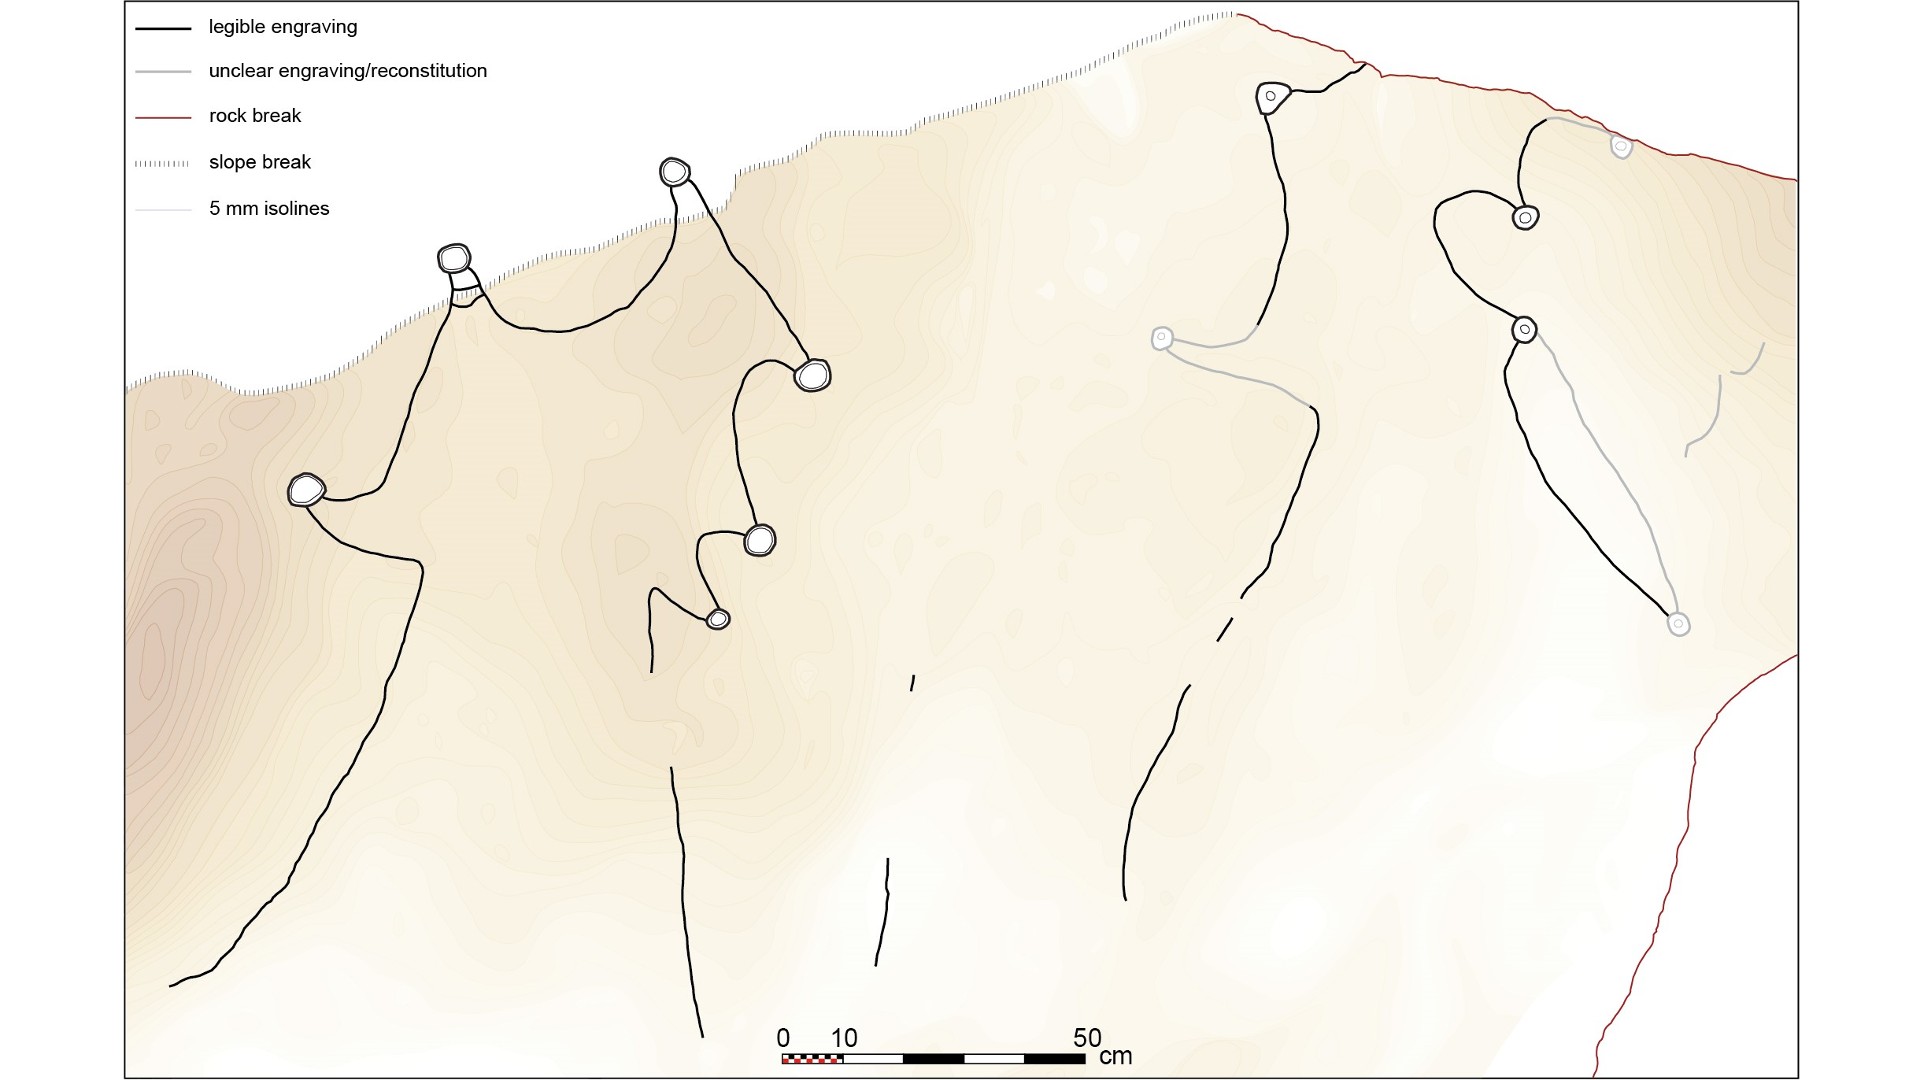 8,000 éves arábiai sziklafaragványok lehetnek a világ legrégebbi megastruktúra tervrajzai 4